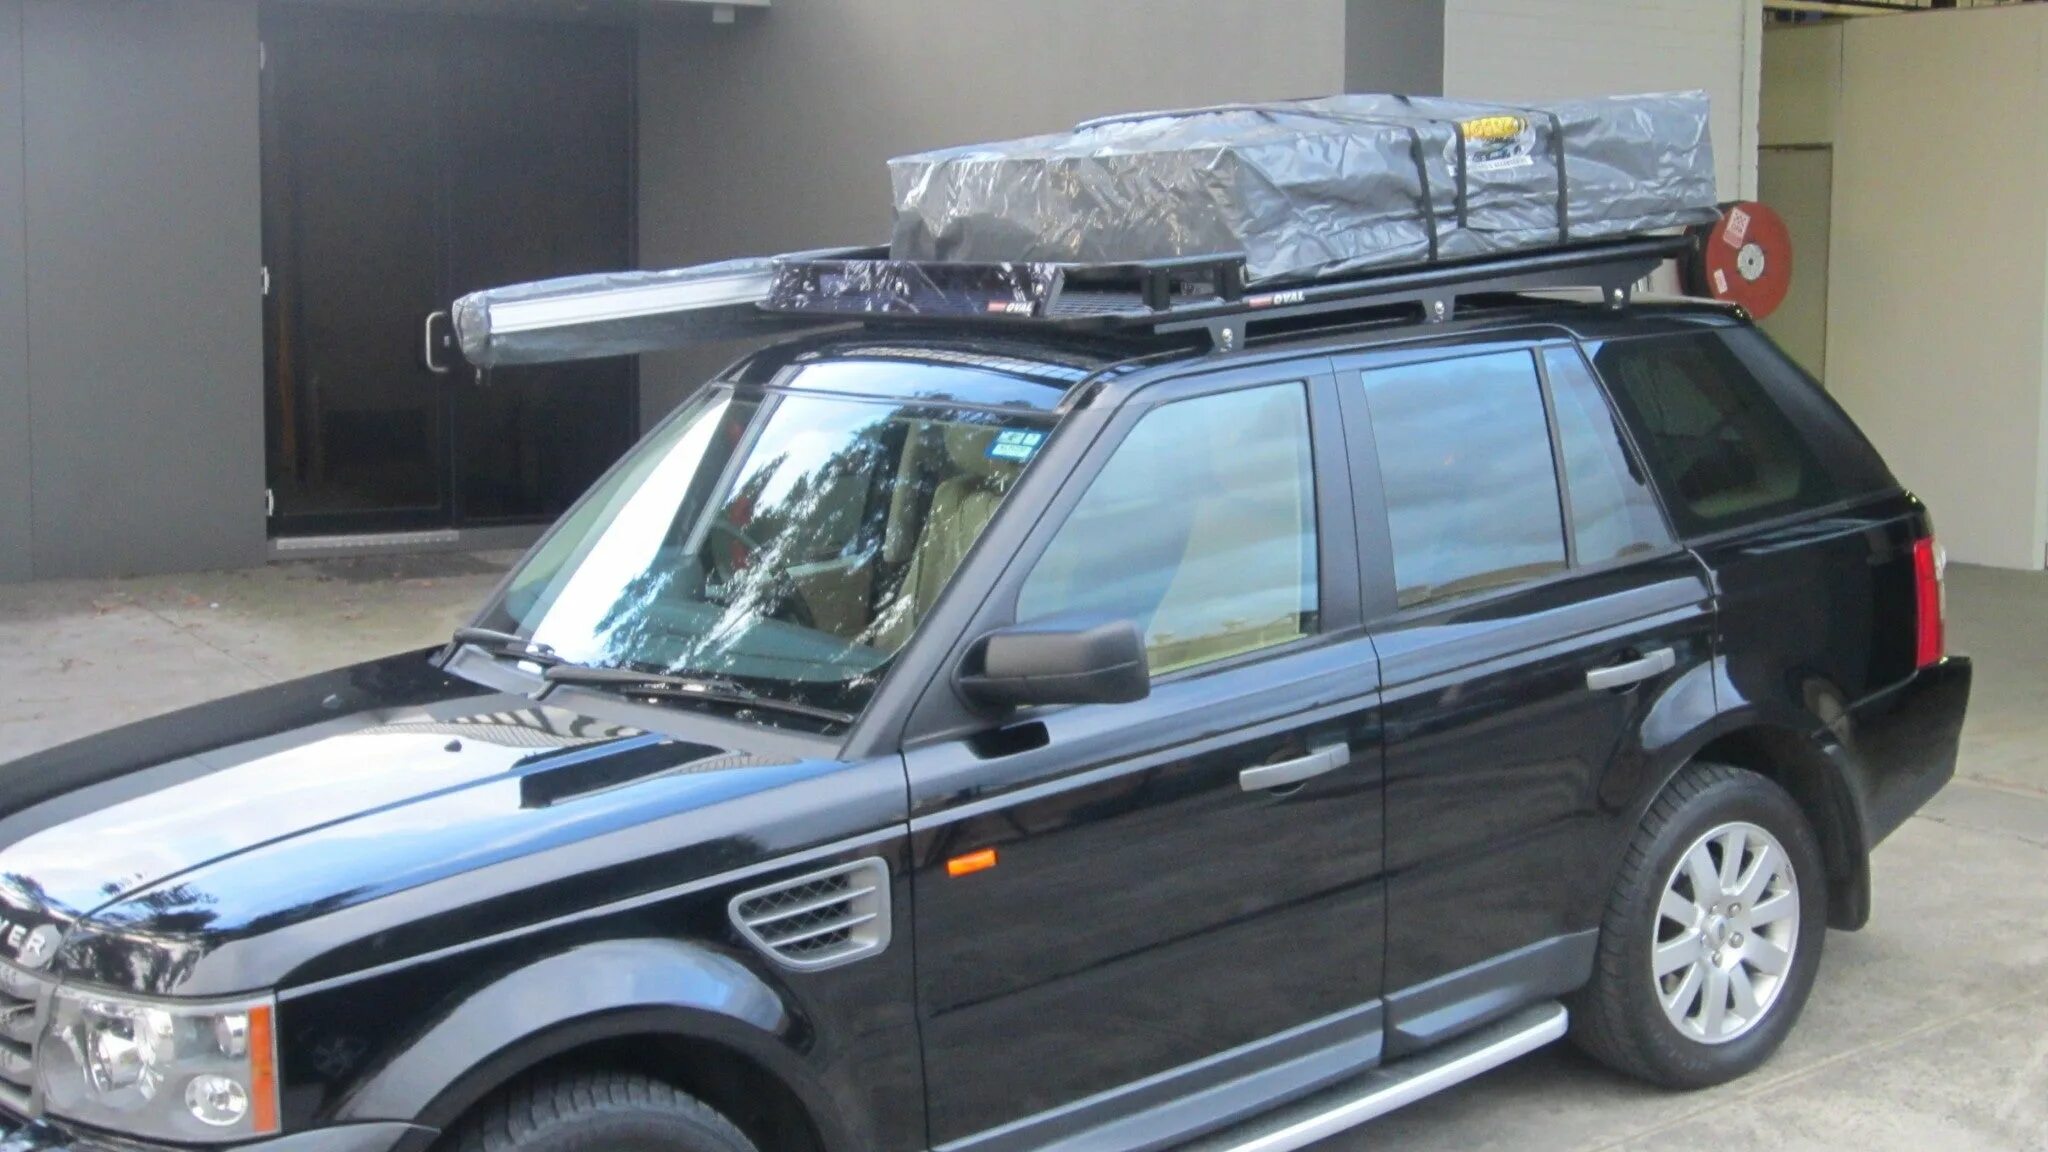 Range Rover l322 экспедиционный багажник. Багажник на крышу Рендж Ровер спорт. Багажник Рендж Ровер p38. Экспедиционный багажник range Rover p38.